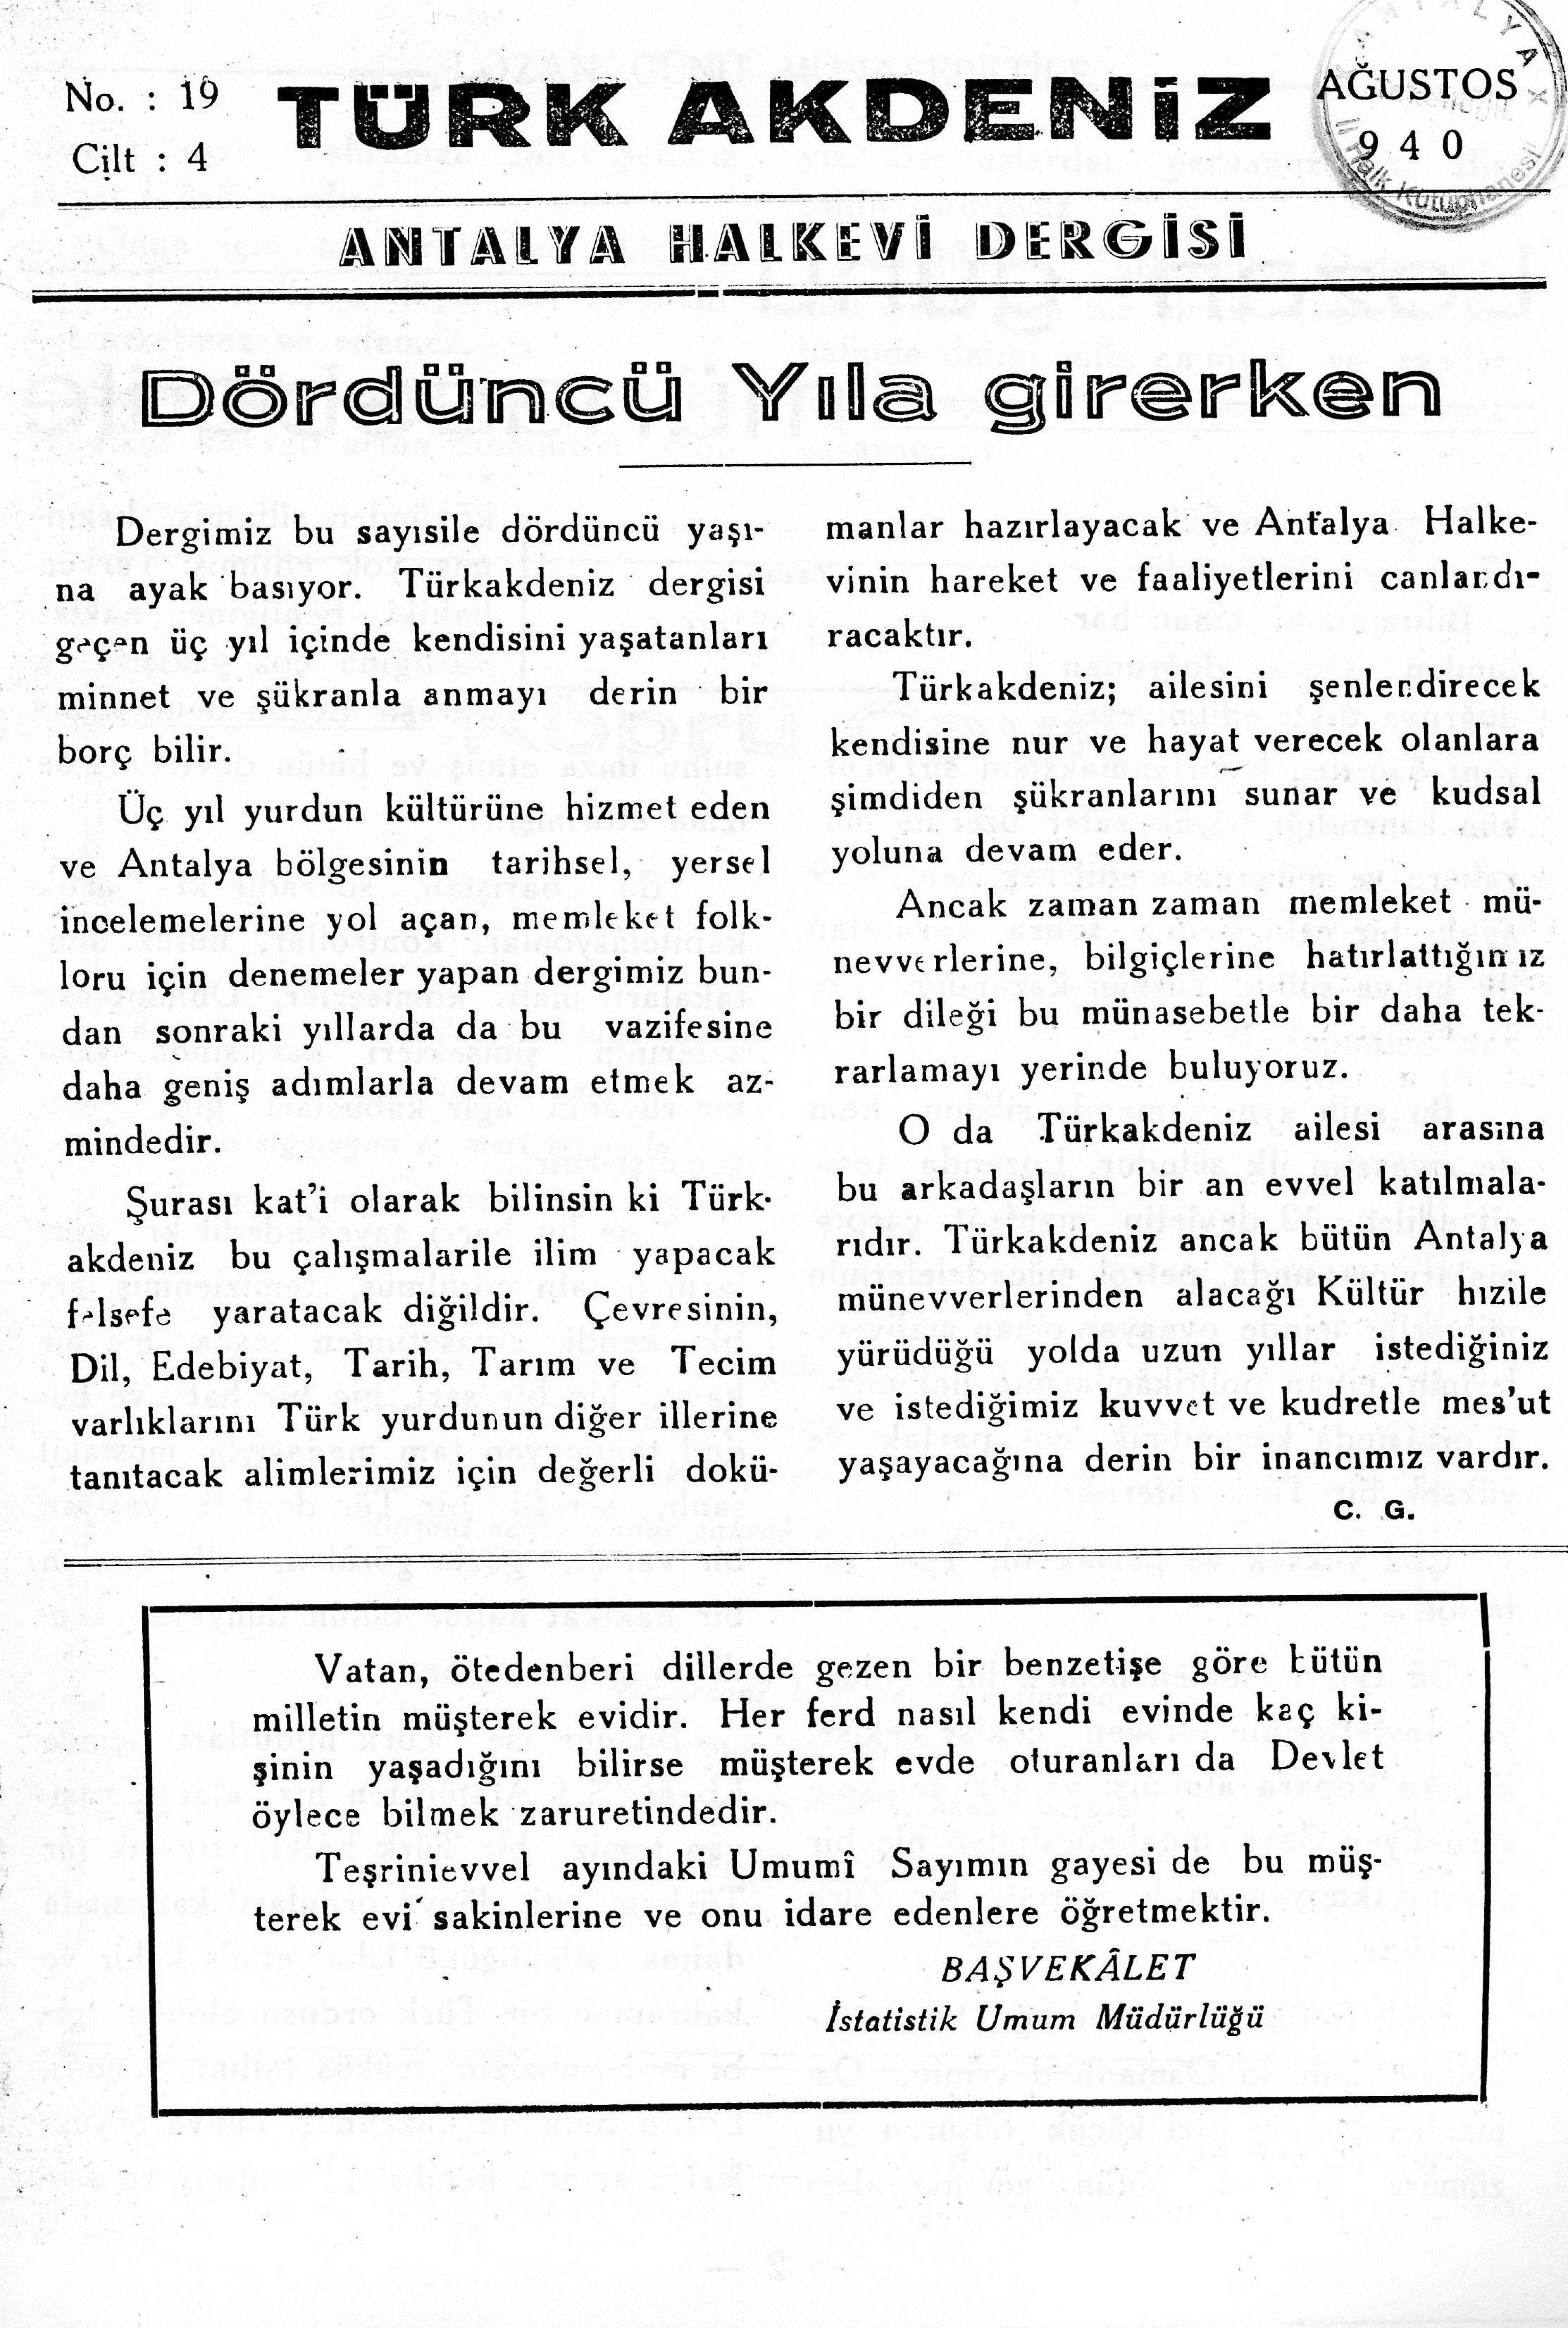 he-turk-akdeniz_1940-4(19)